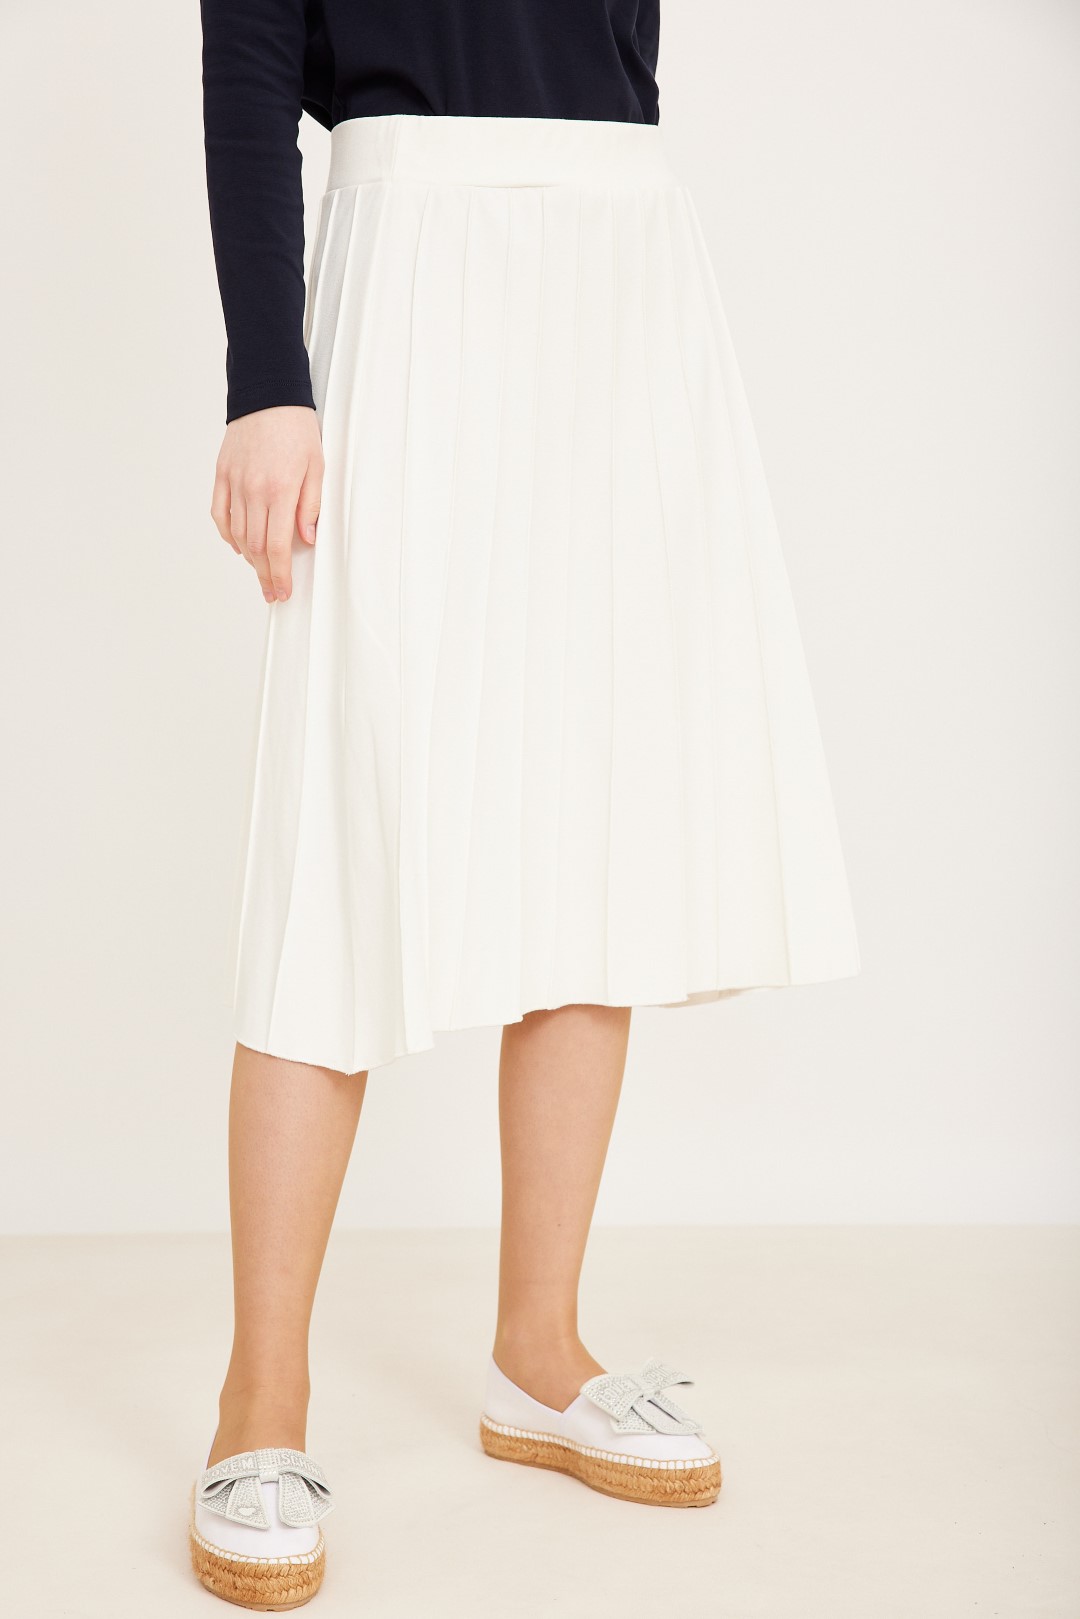 חצאית מחולקת לבנה (קיים גם בשחור)